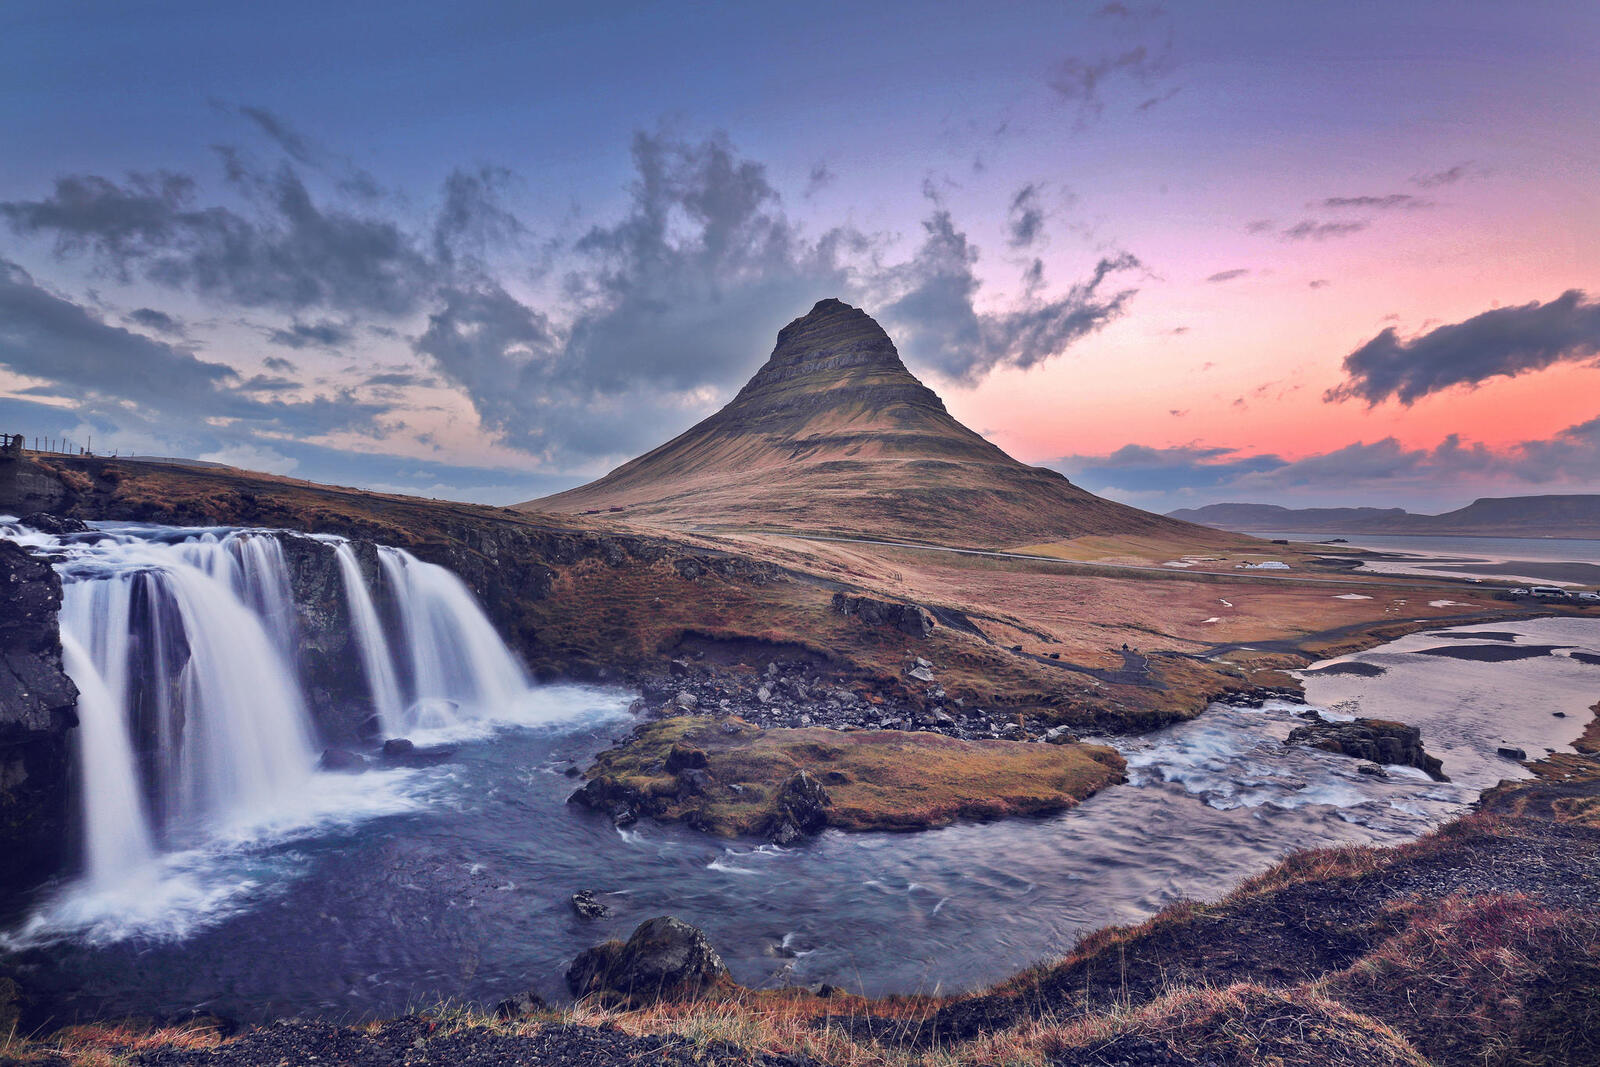 Обои Waterfall Kirkjufell Iceland на рабочий стол